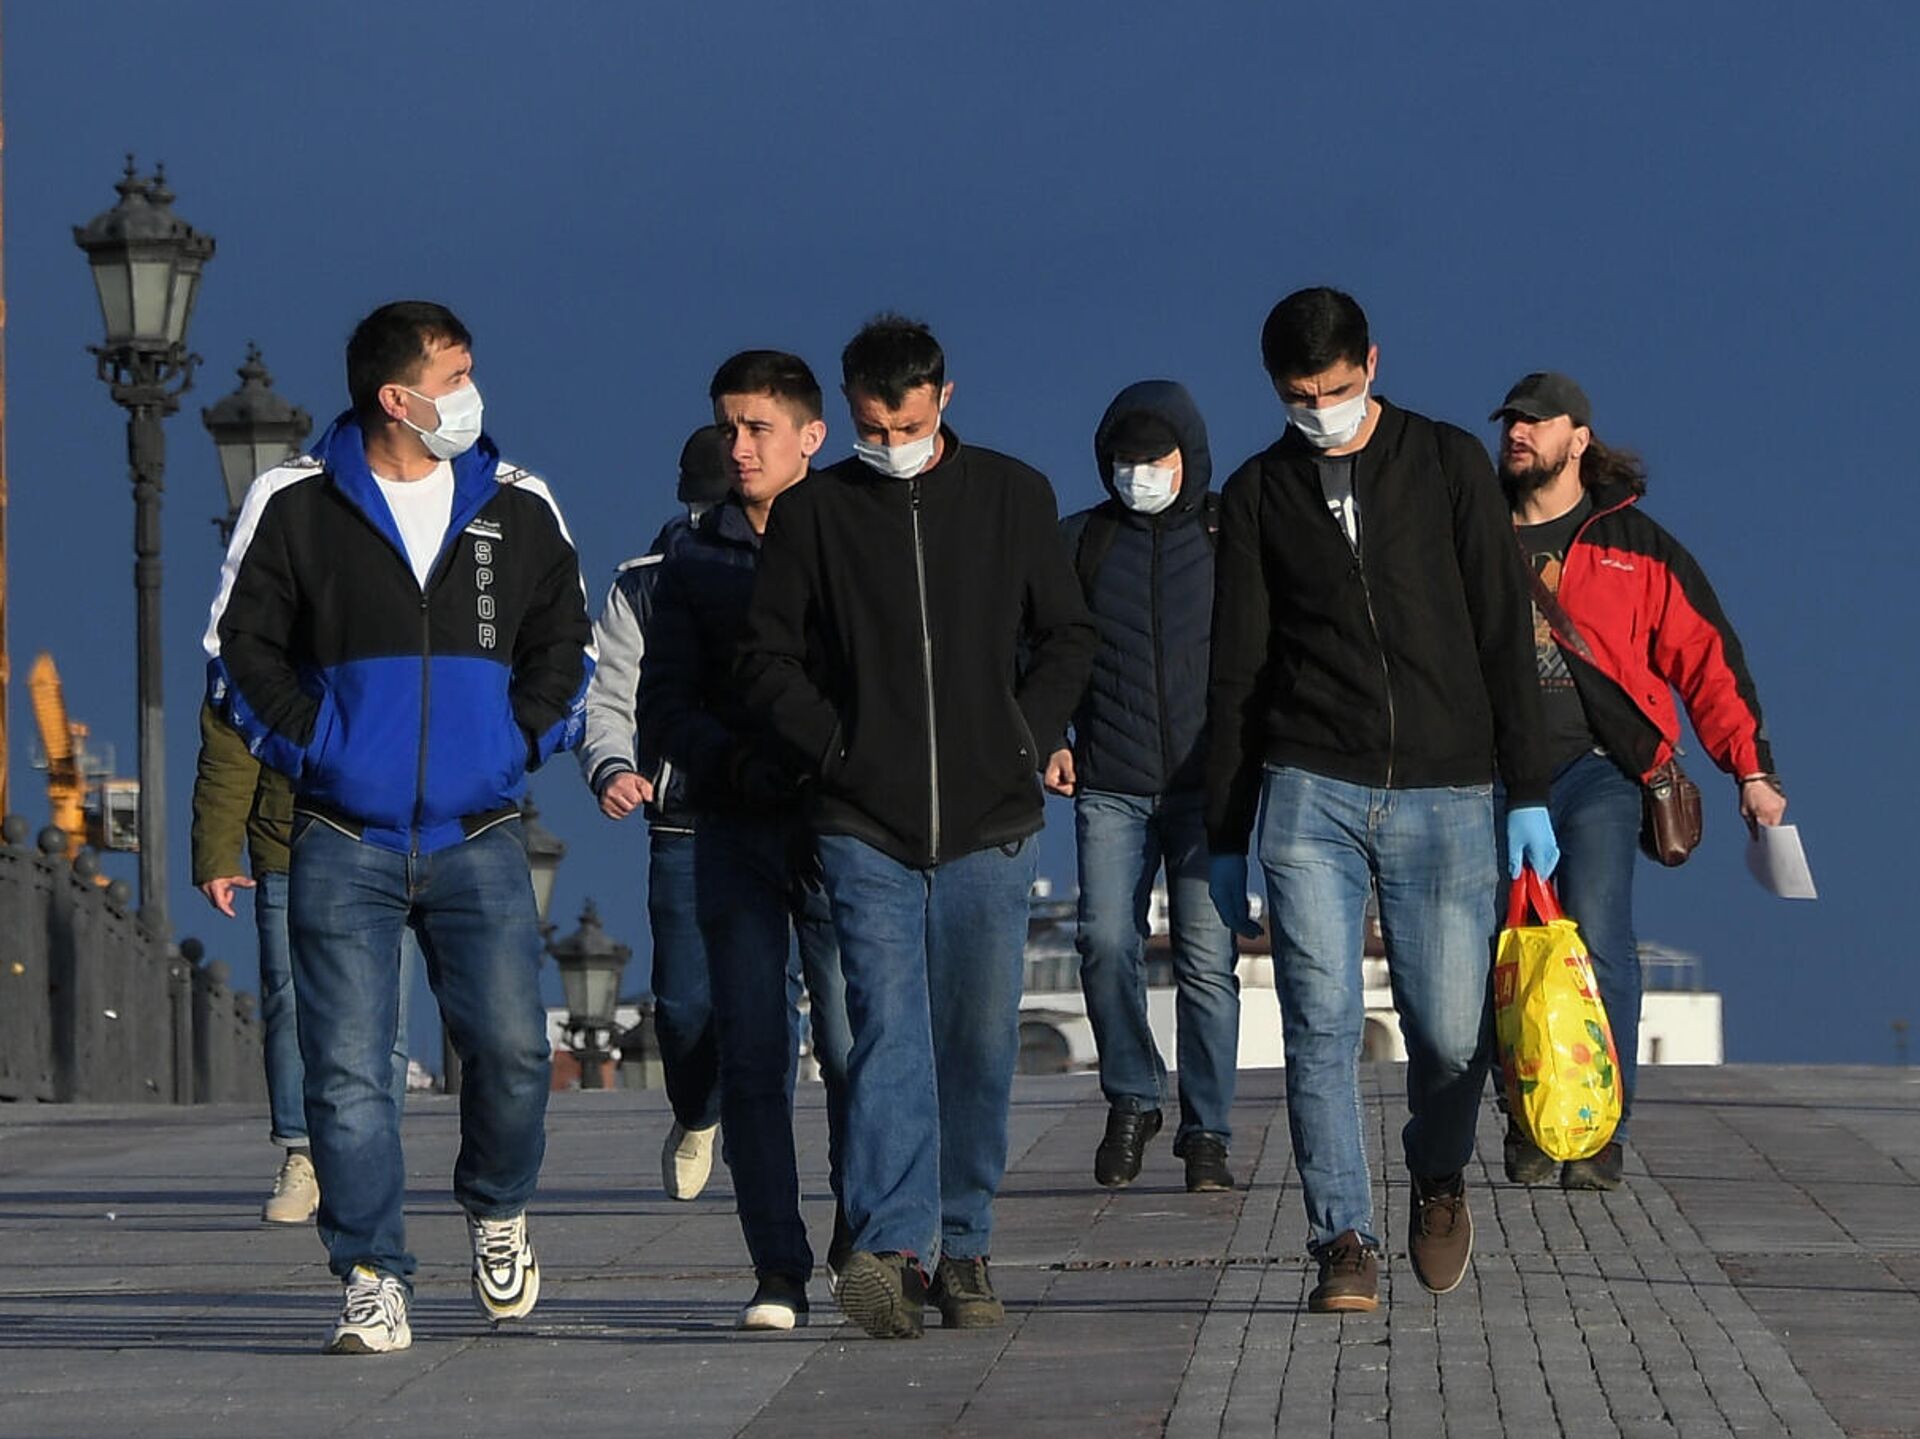 Хамелеон толпа. Толпа Дагеста+нцев. Толпа людей на улице зимой. Мигранты в Корее хорошее качество фото. Саратовские парни толпа фото.